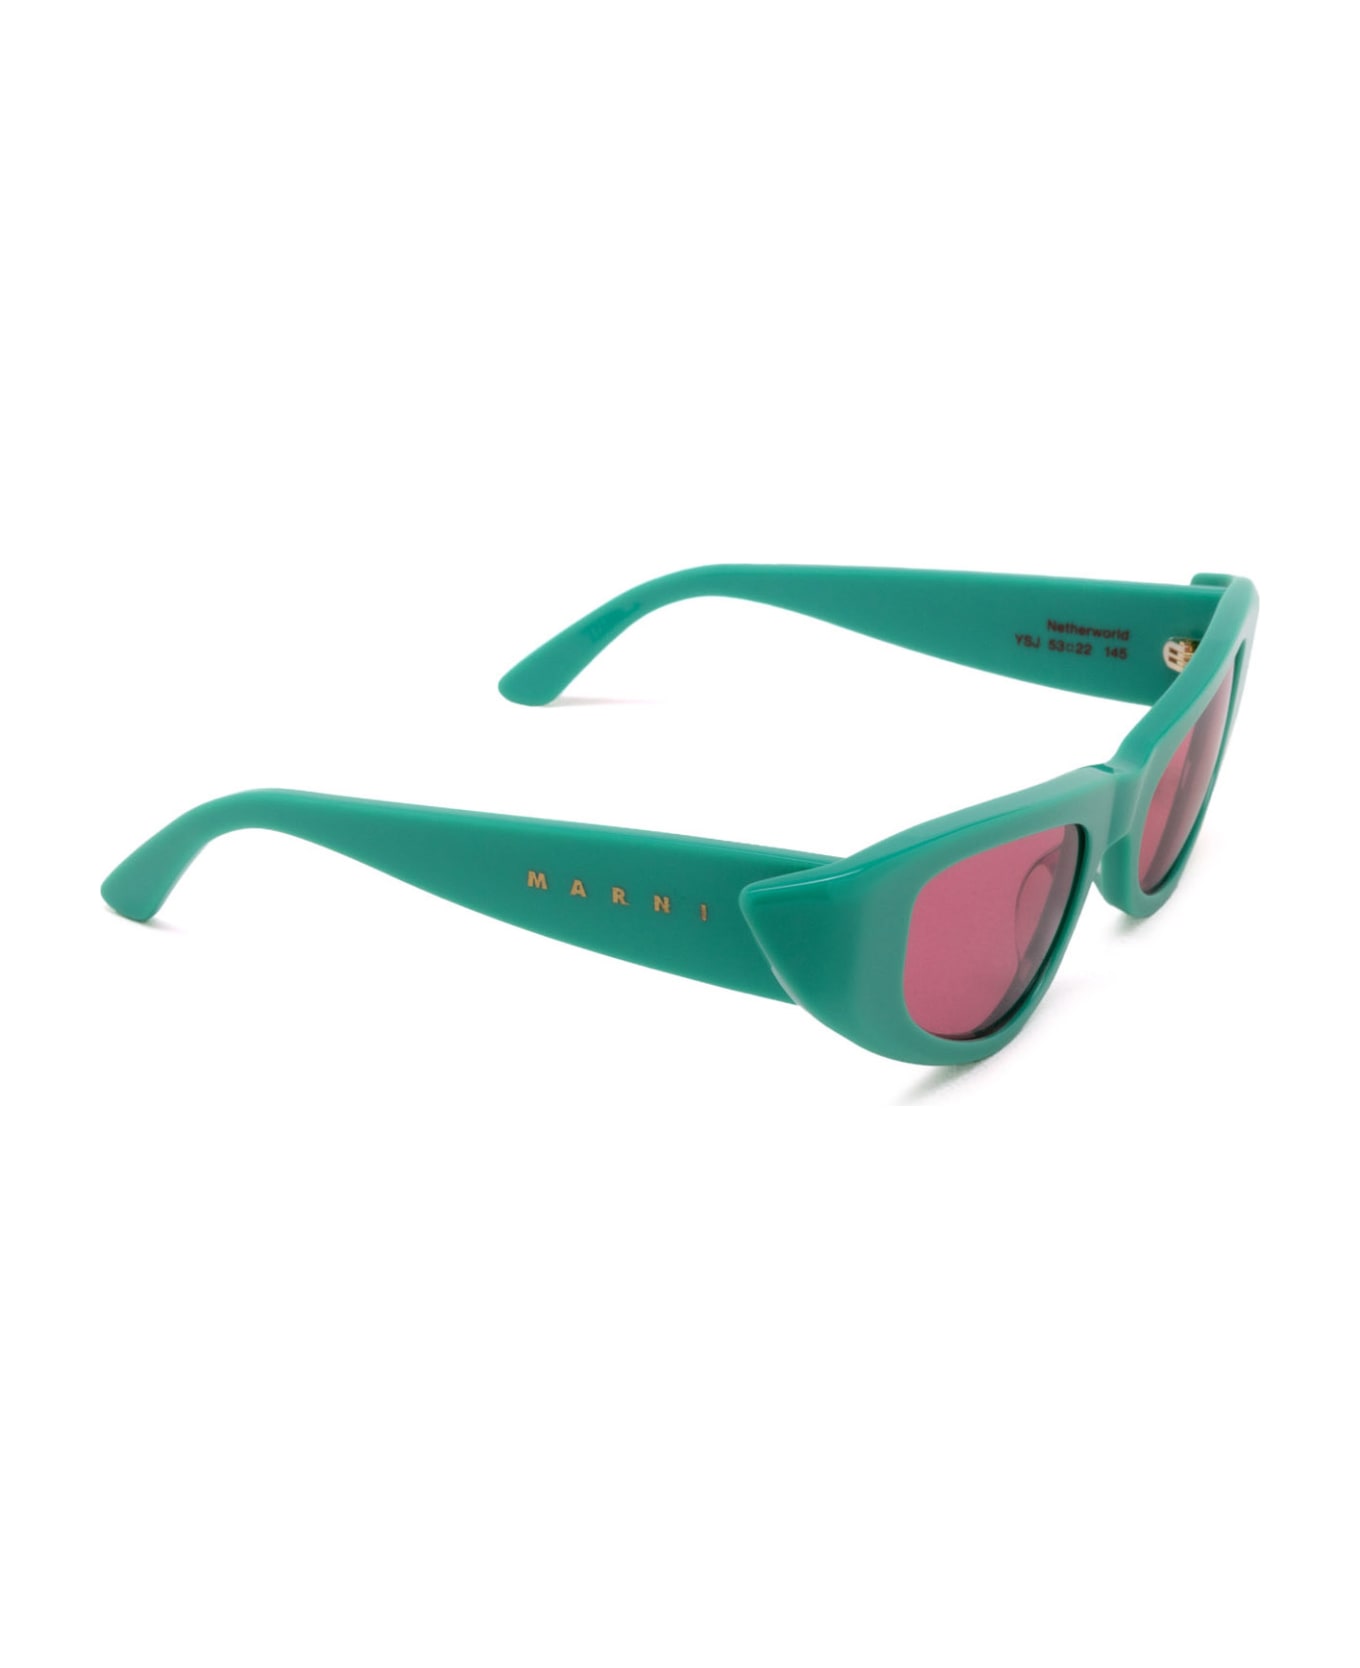 Marni Eyewear Netherworld Green Sunglasses - Green